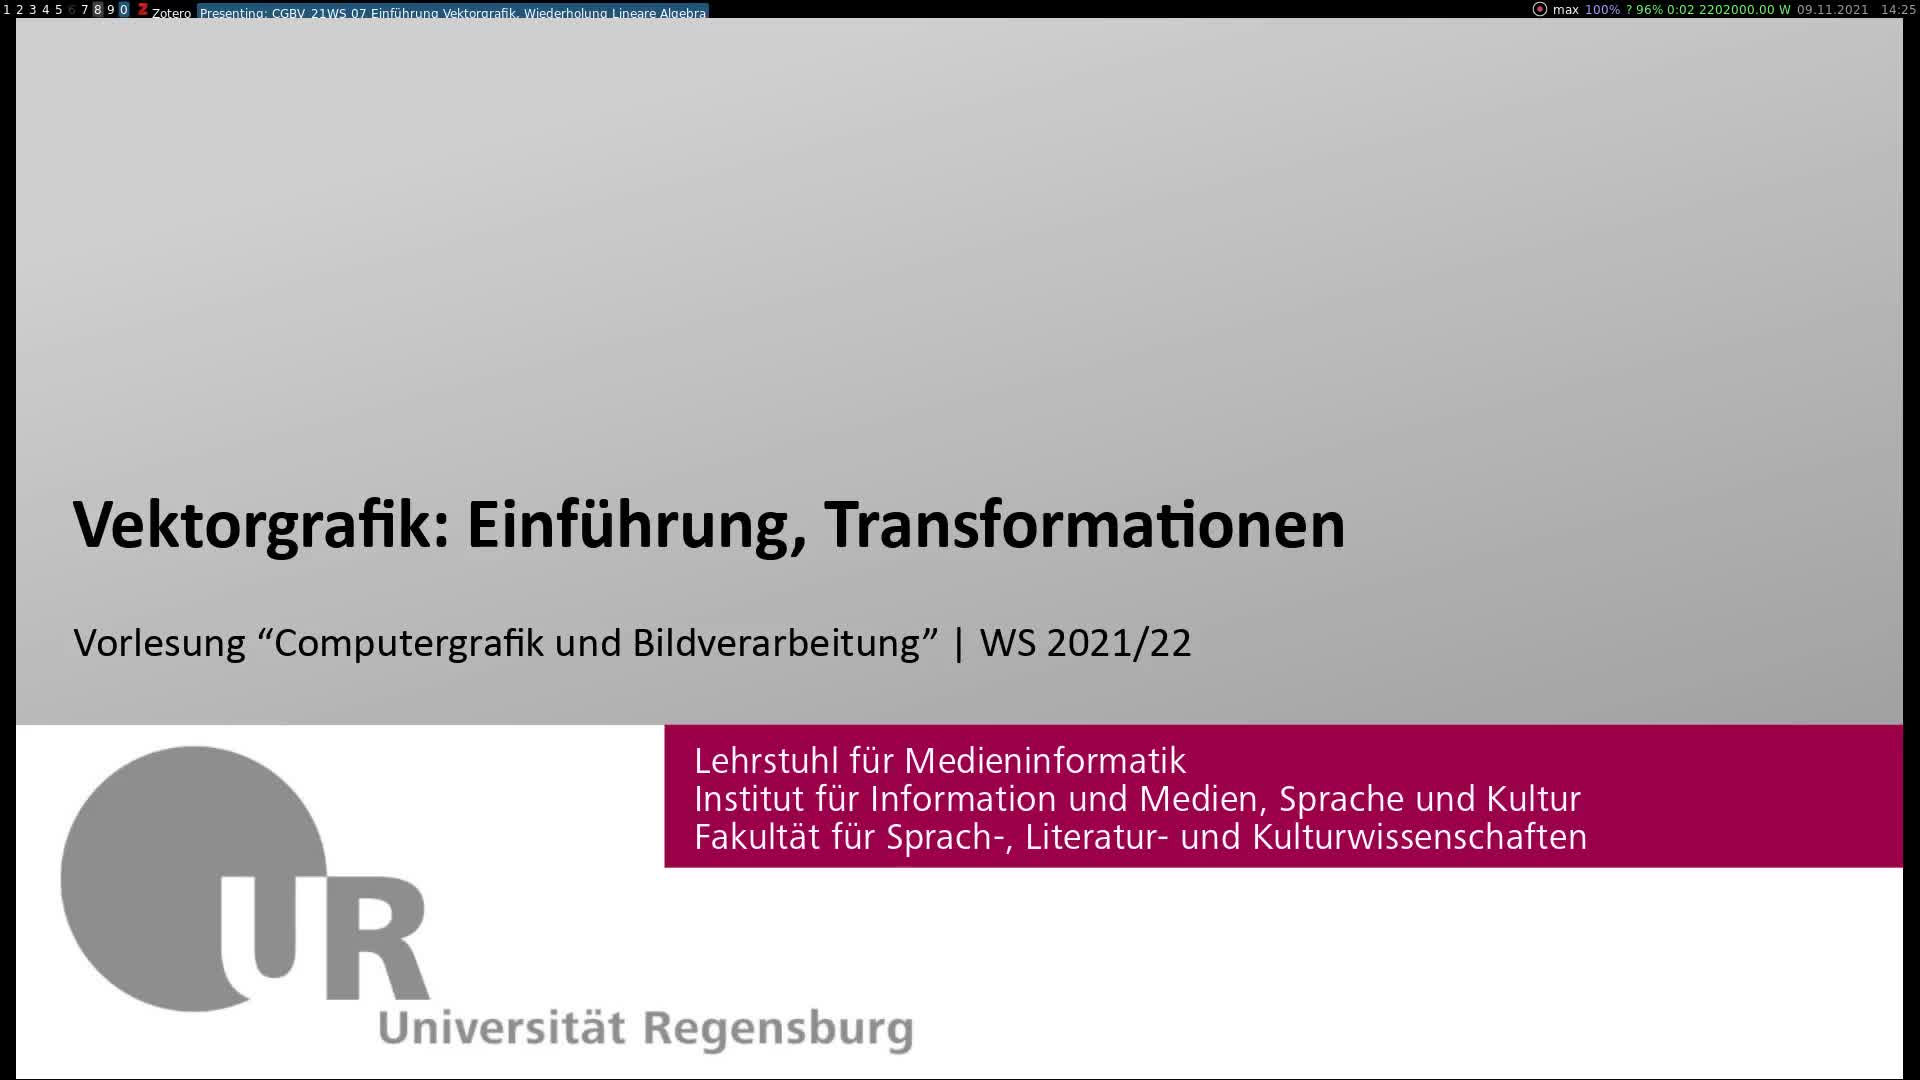 Computergrafik und Bildverarbeitung 07: Vektorgrafik: Einführung, Transformationen (9.11.2021)